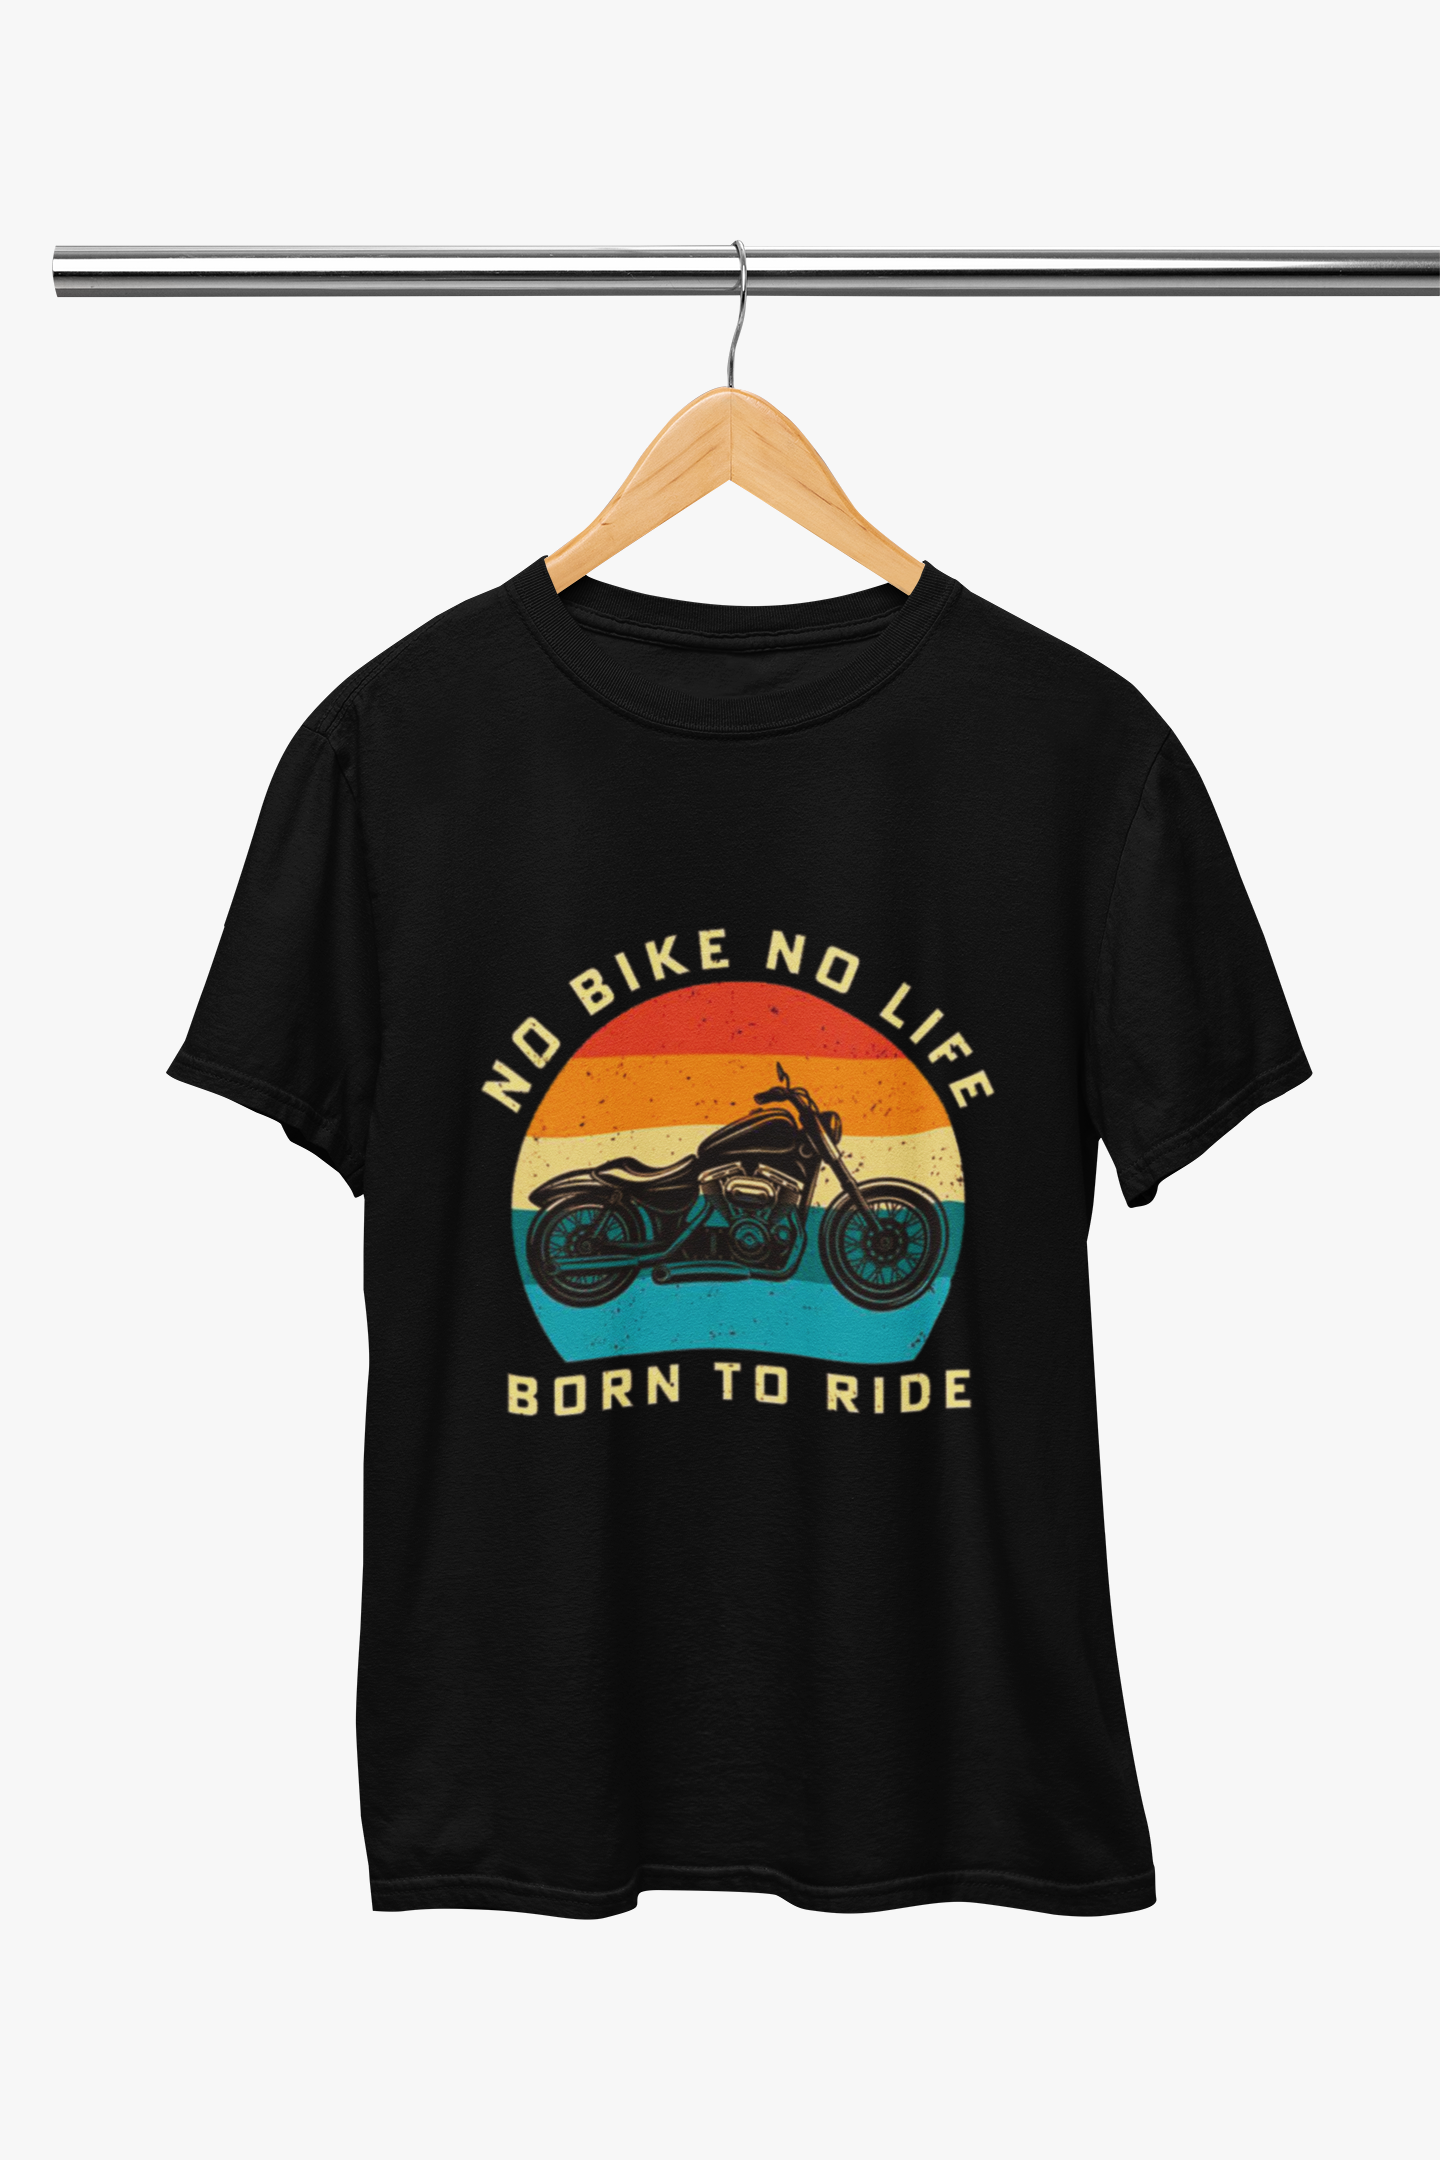 Biker : No Bike No Life Born to Ride Black T-Shirt